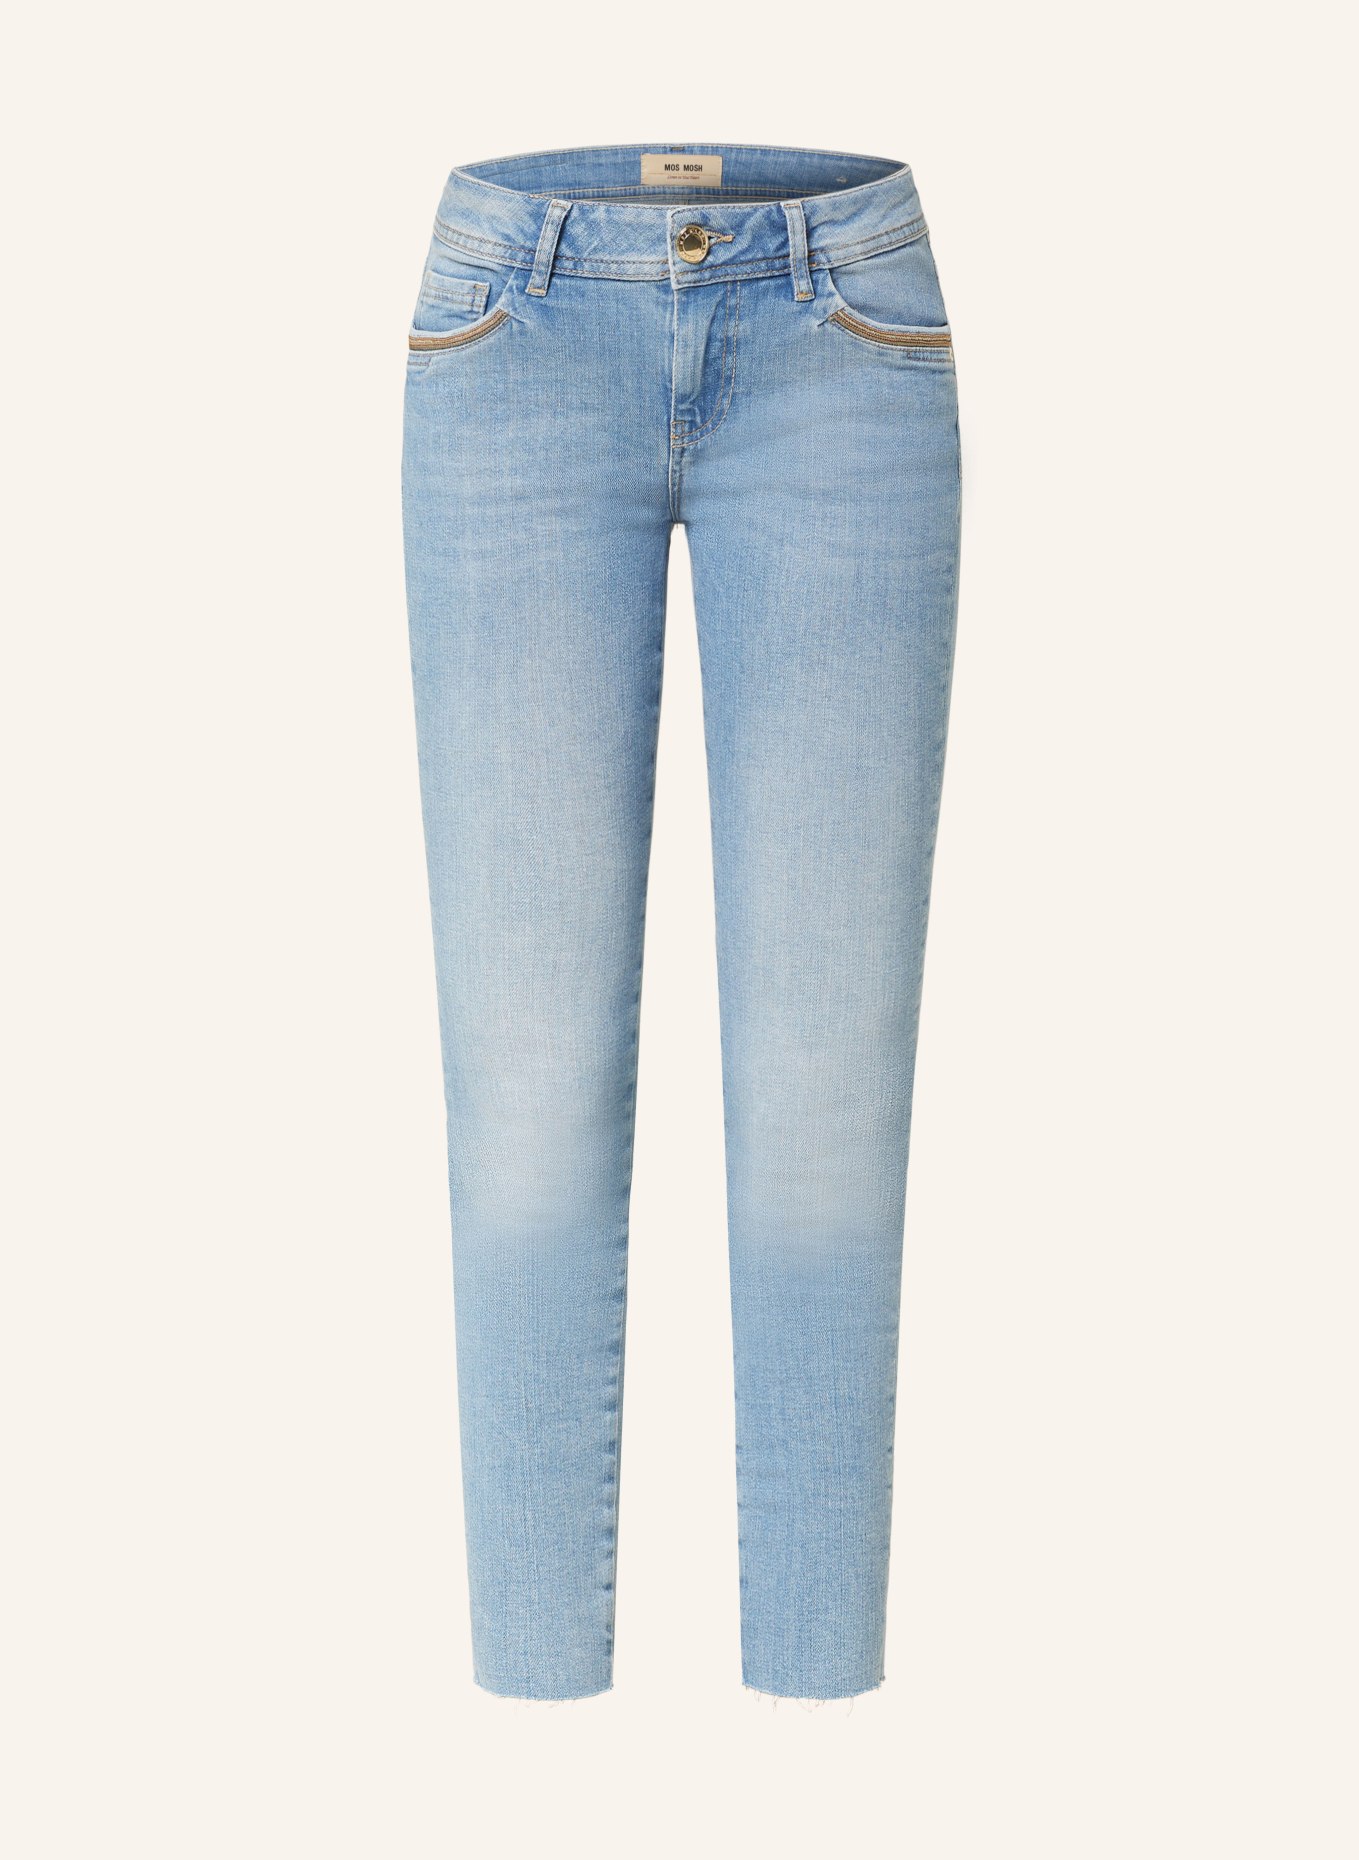 MOS MOSH Skinny jeans MMSUMNER, Color: 406 LIGHT BLUE (Image 1)